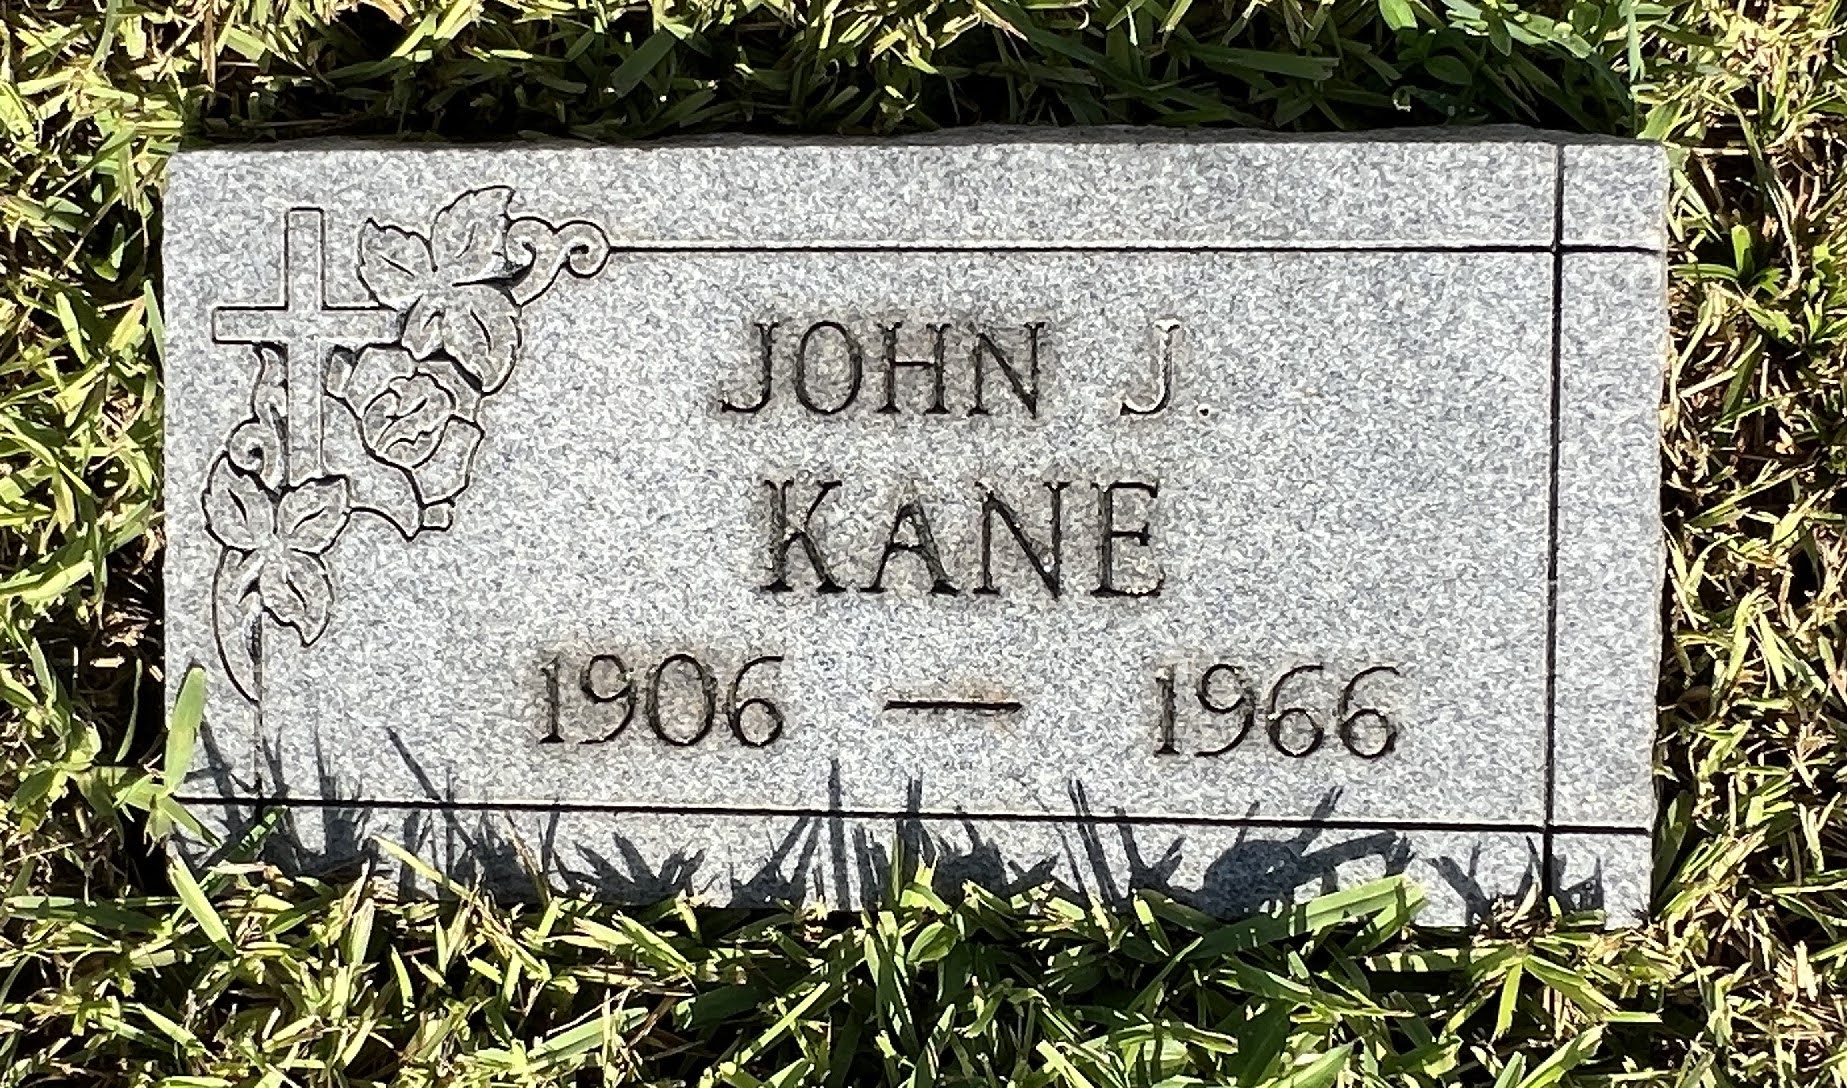 John J Kane